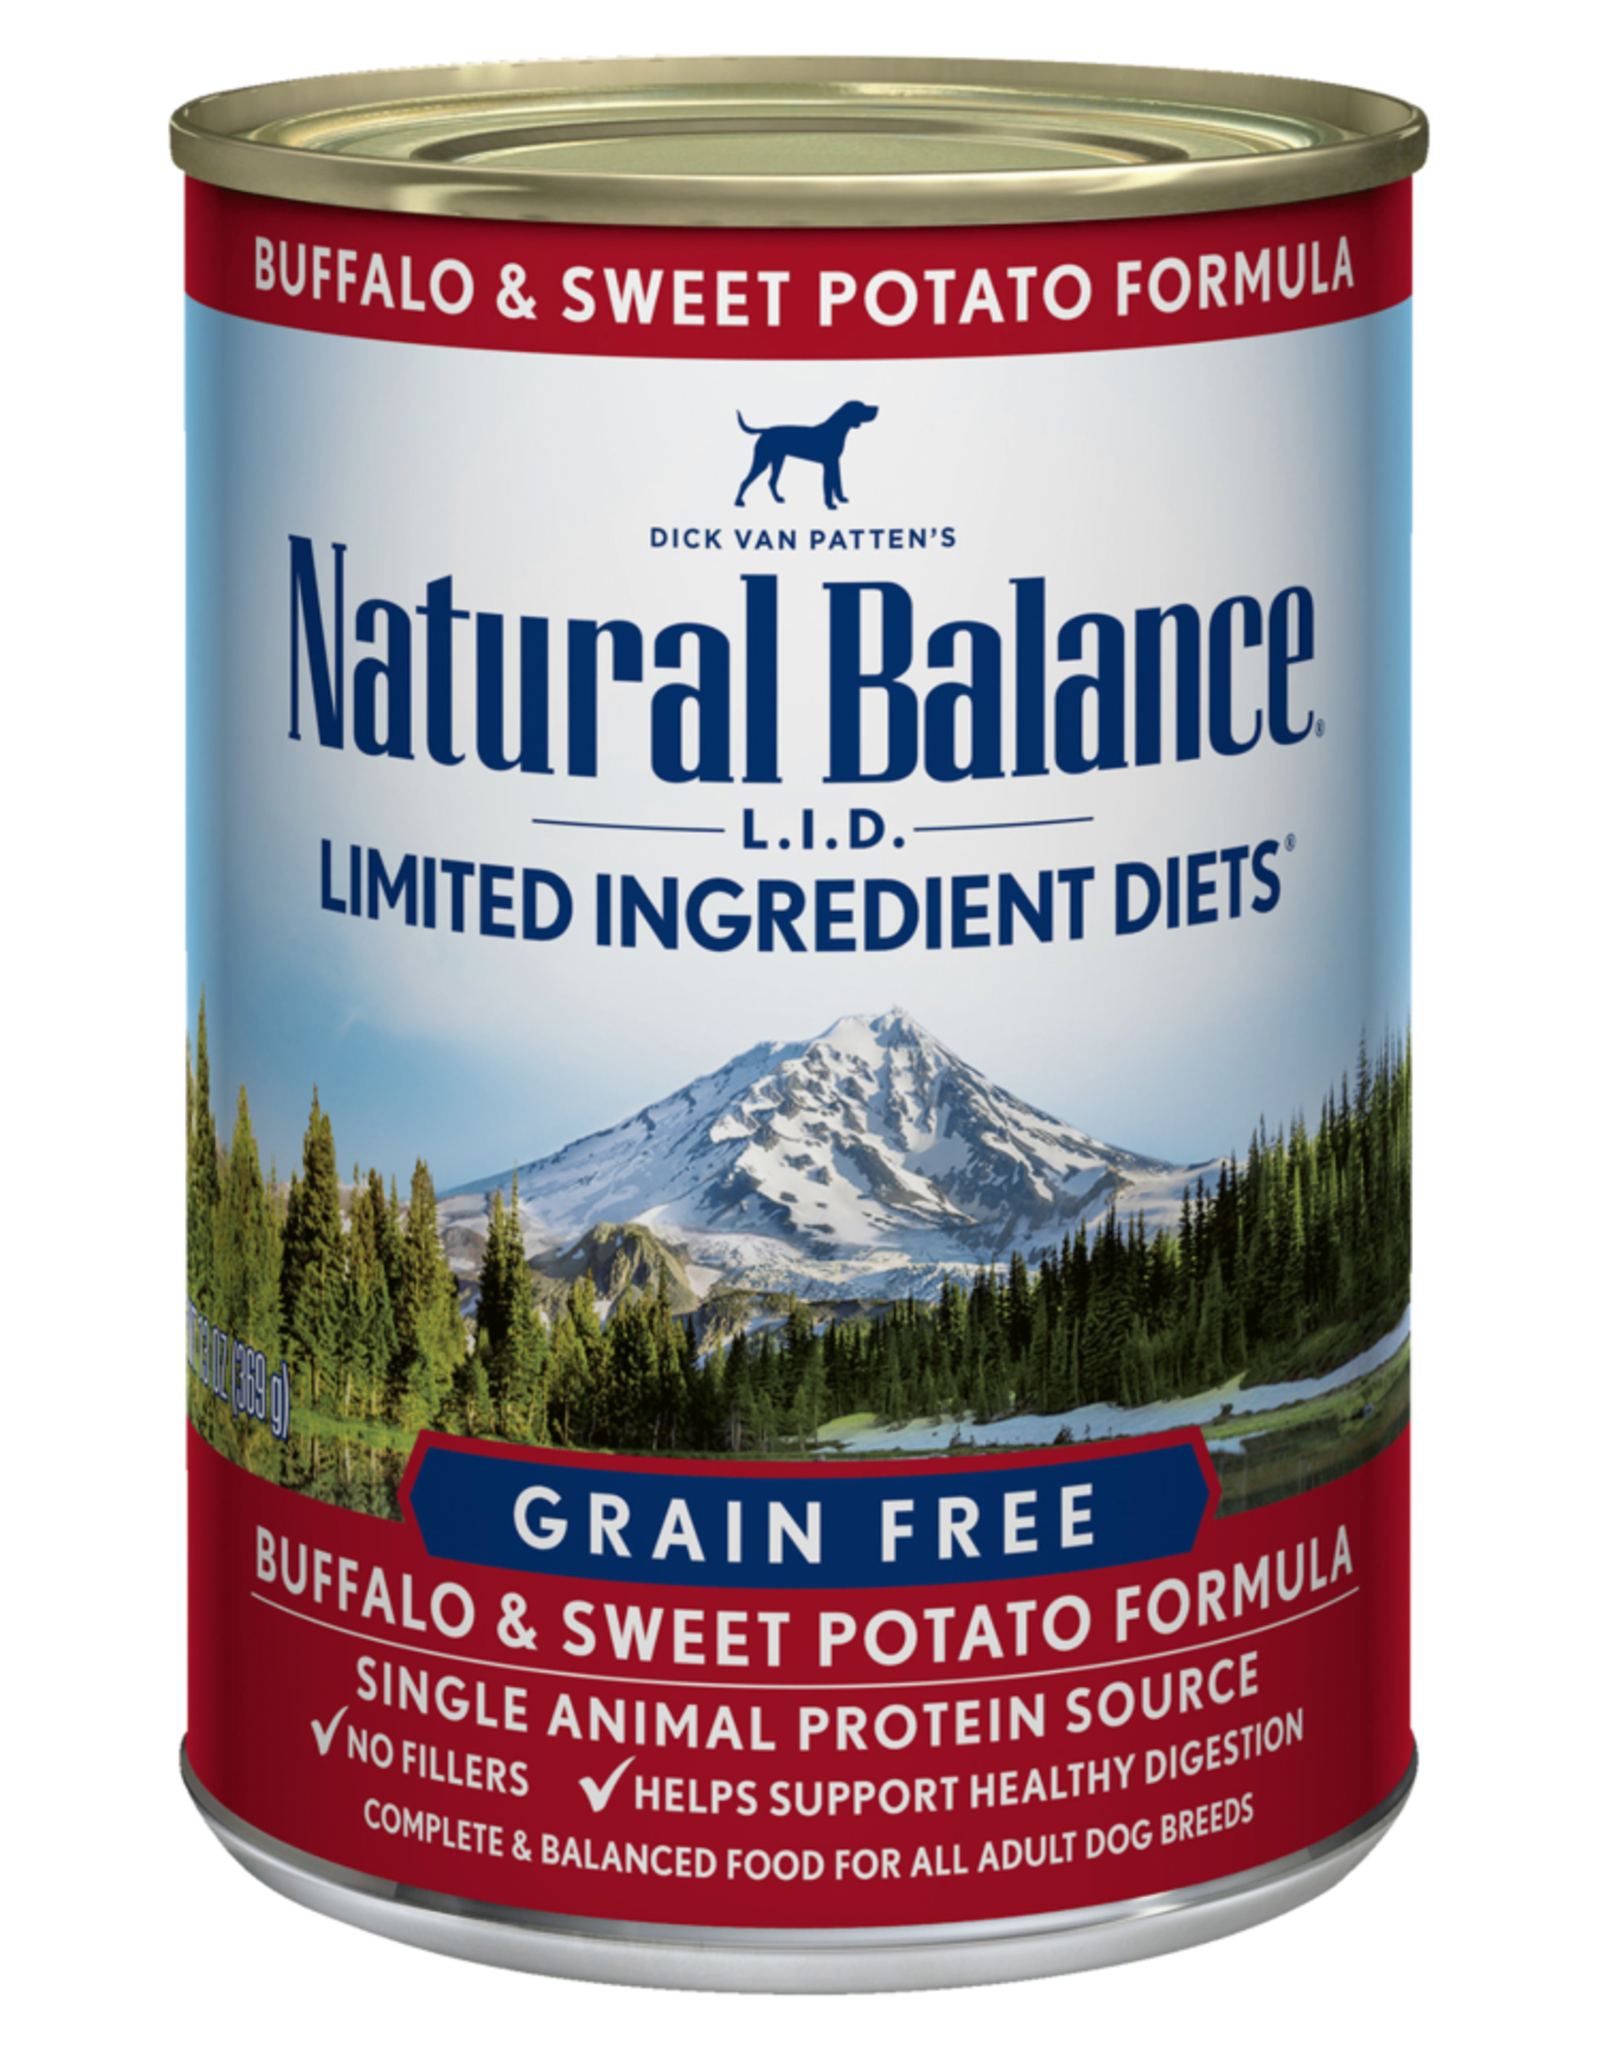 NATURAL BALANCE PET FOODS, INC NATURAL BALANCE DOG BISON & SWEET POTATO CAN 13OZ CASE OF 12